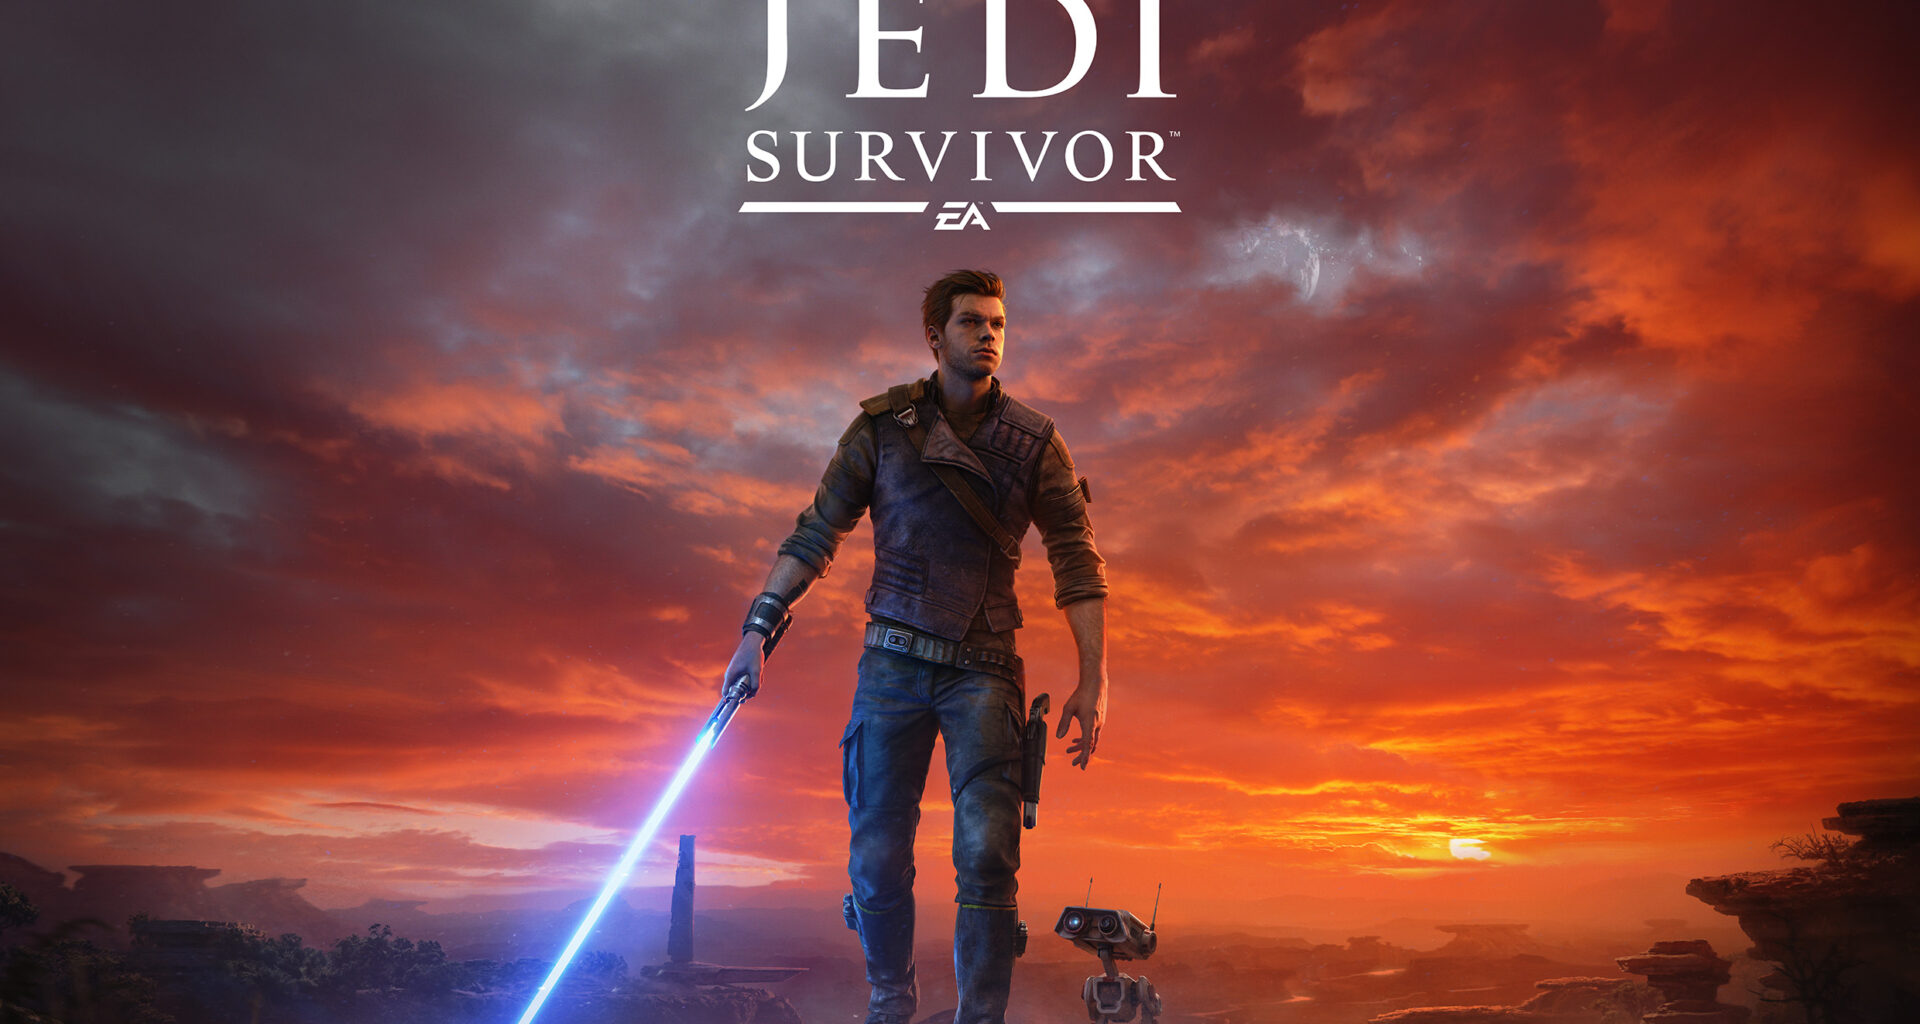 Ein Promo-Bild zu Star Wars Jedi Survivor, Protagonist steht mit aktiviertem Lichtschwert auf einer Klippe, neben ihm steht sein Droide BD-1.